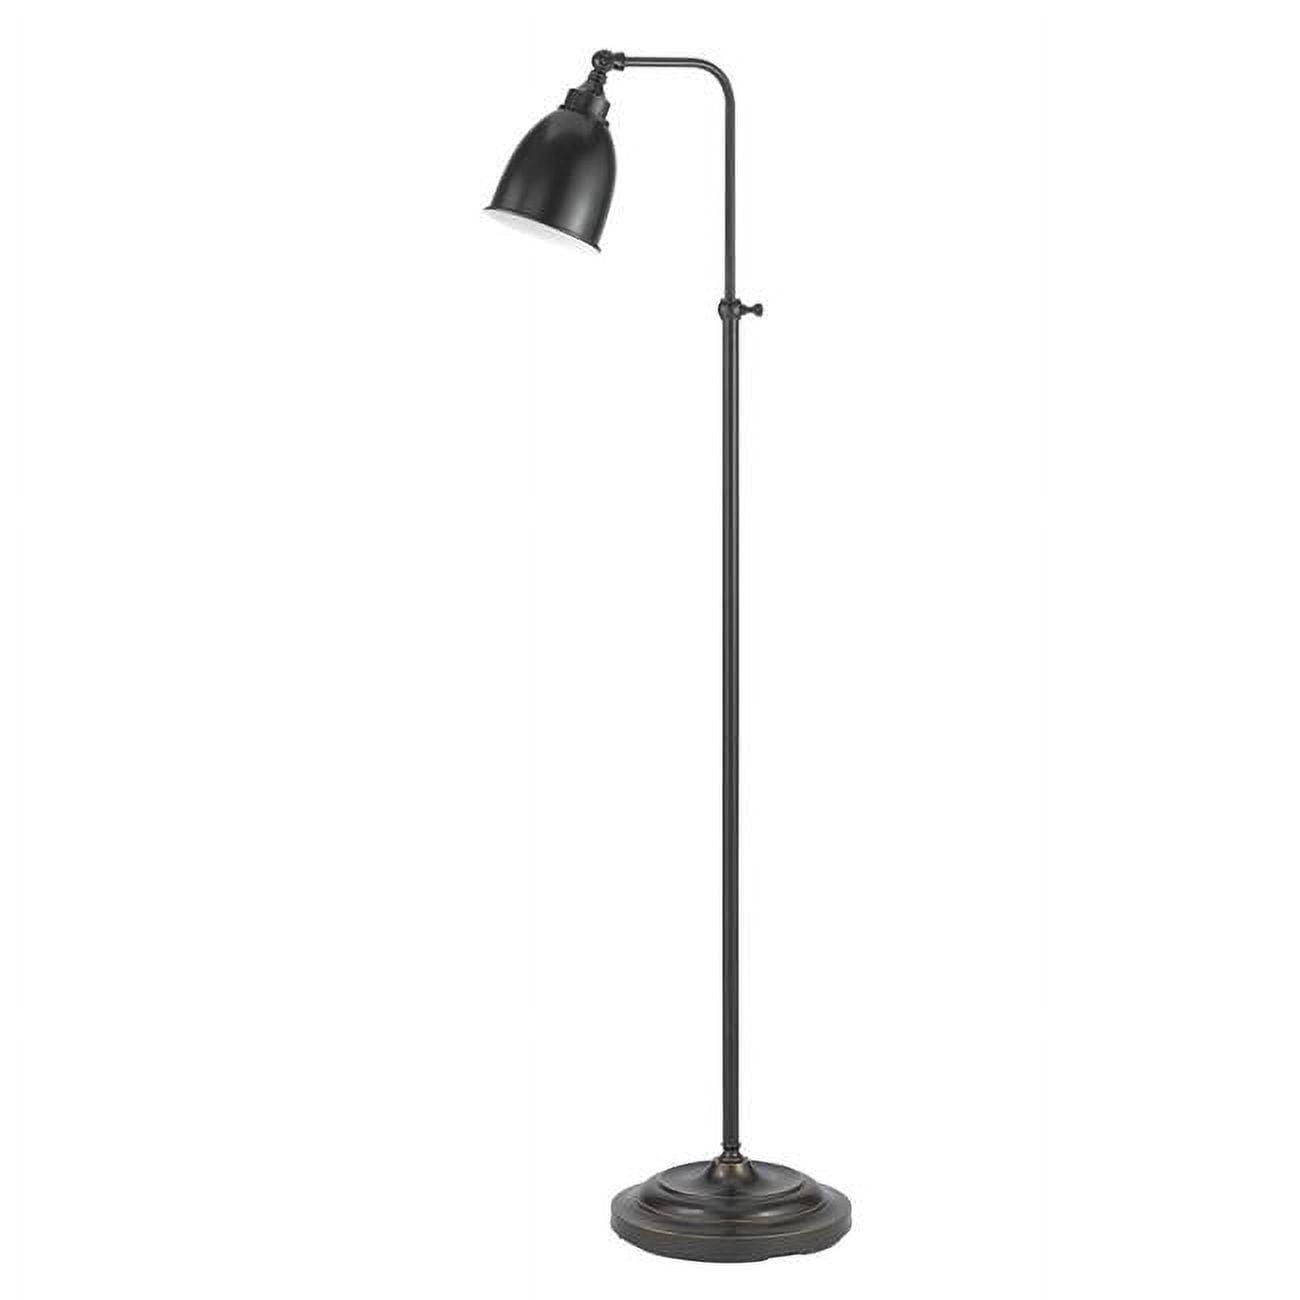 Adjustable Dark Bronze 62" Metal Floor Lamp with Dimmable Light